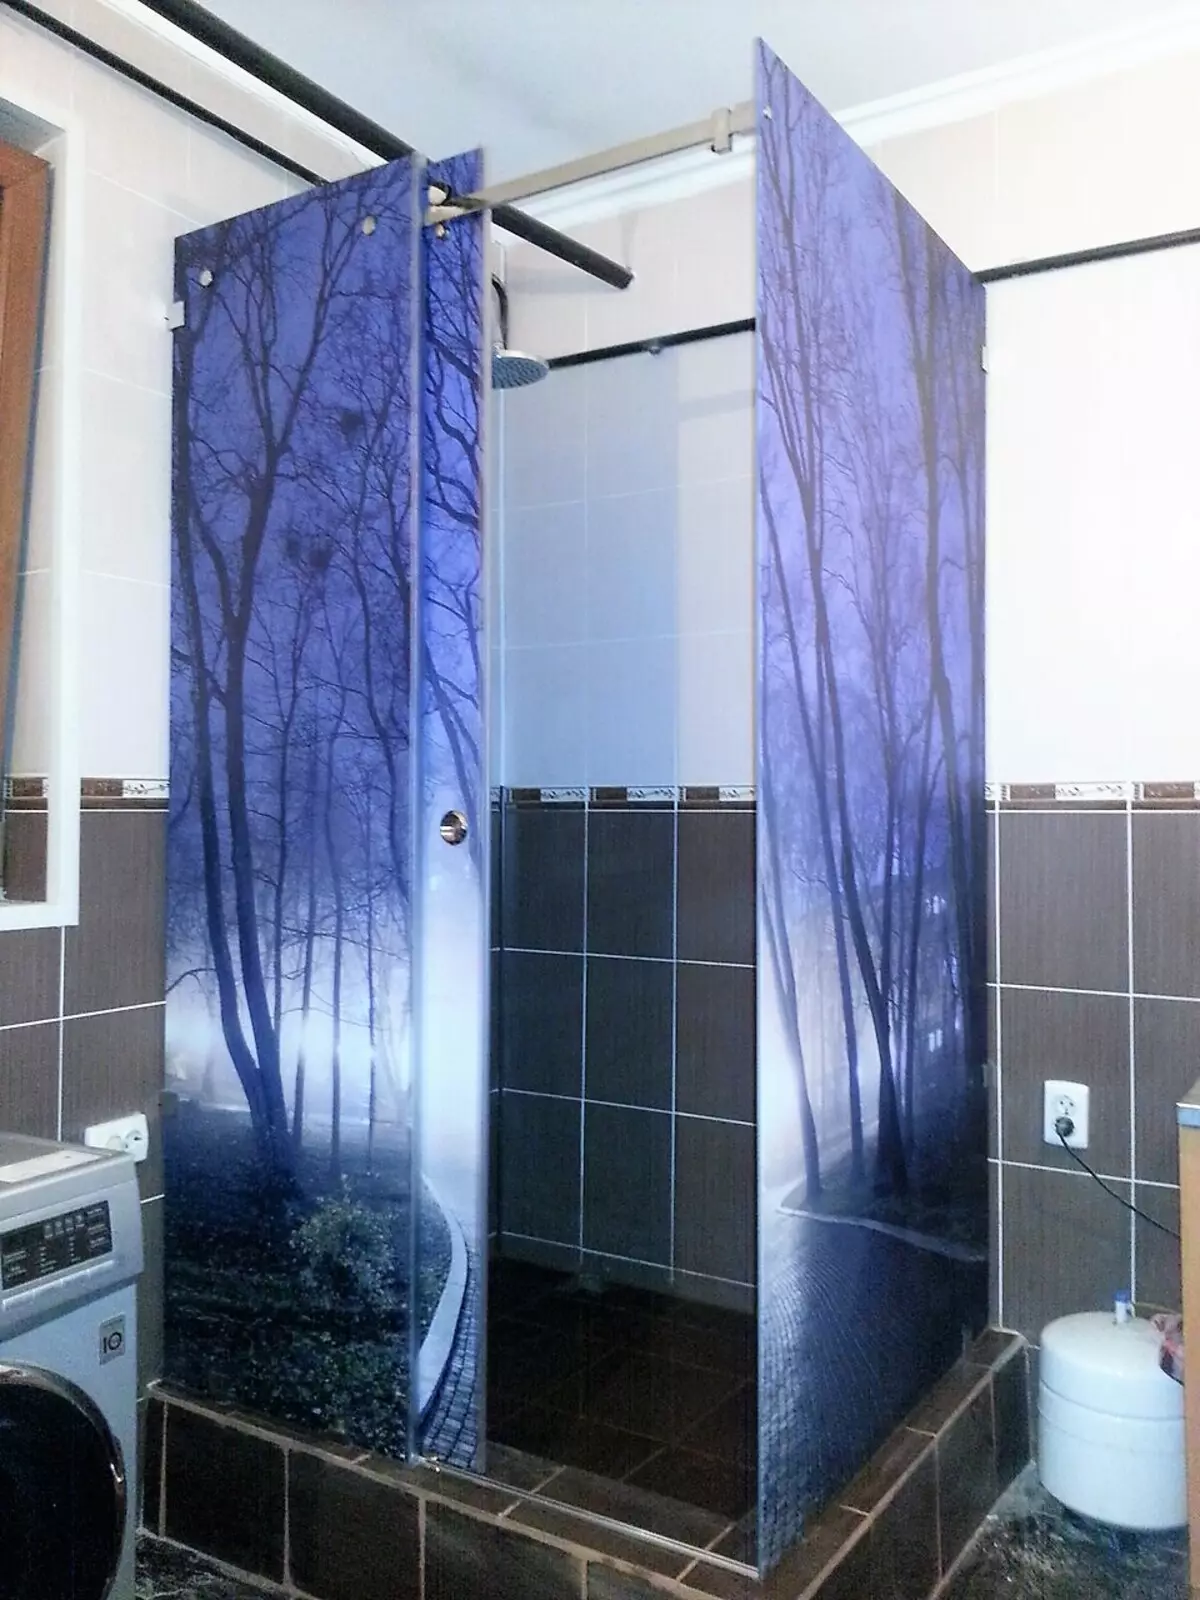 Dušas be dušo vonioje (57 nuotraukos): vonios kambario dizainas ir apdaila su sielos scenoje be salono privačiame name ir bute 21400_40